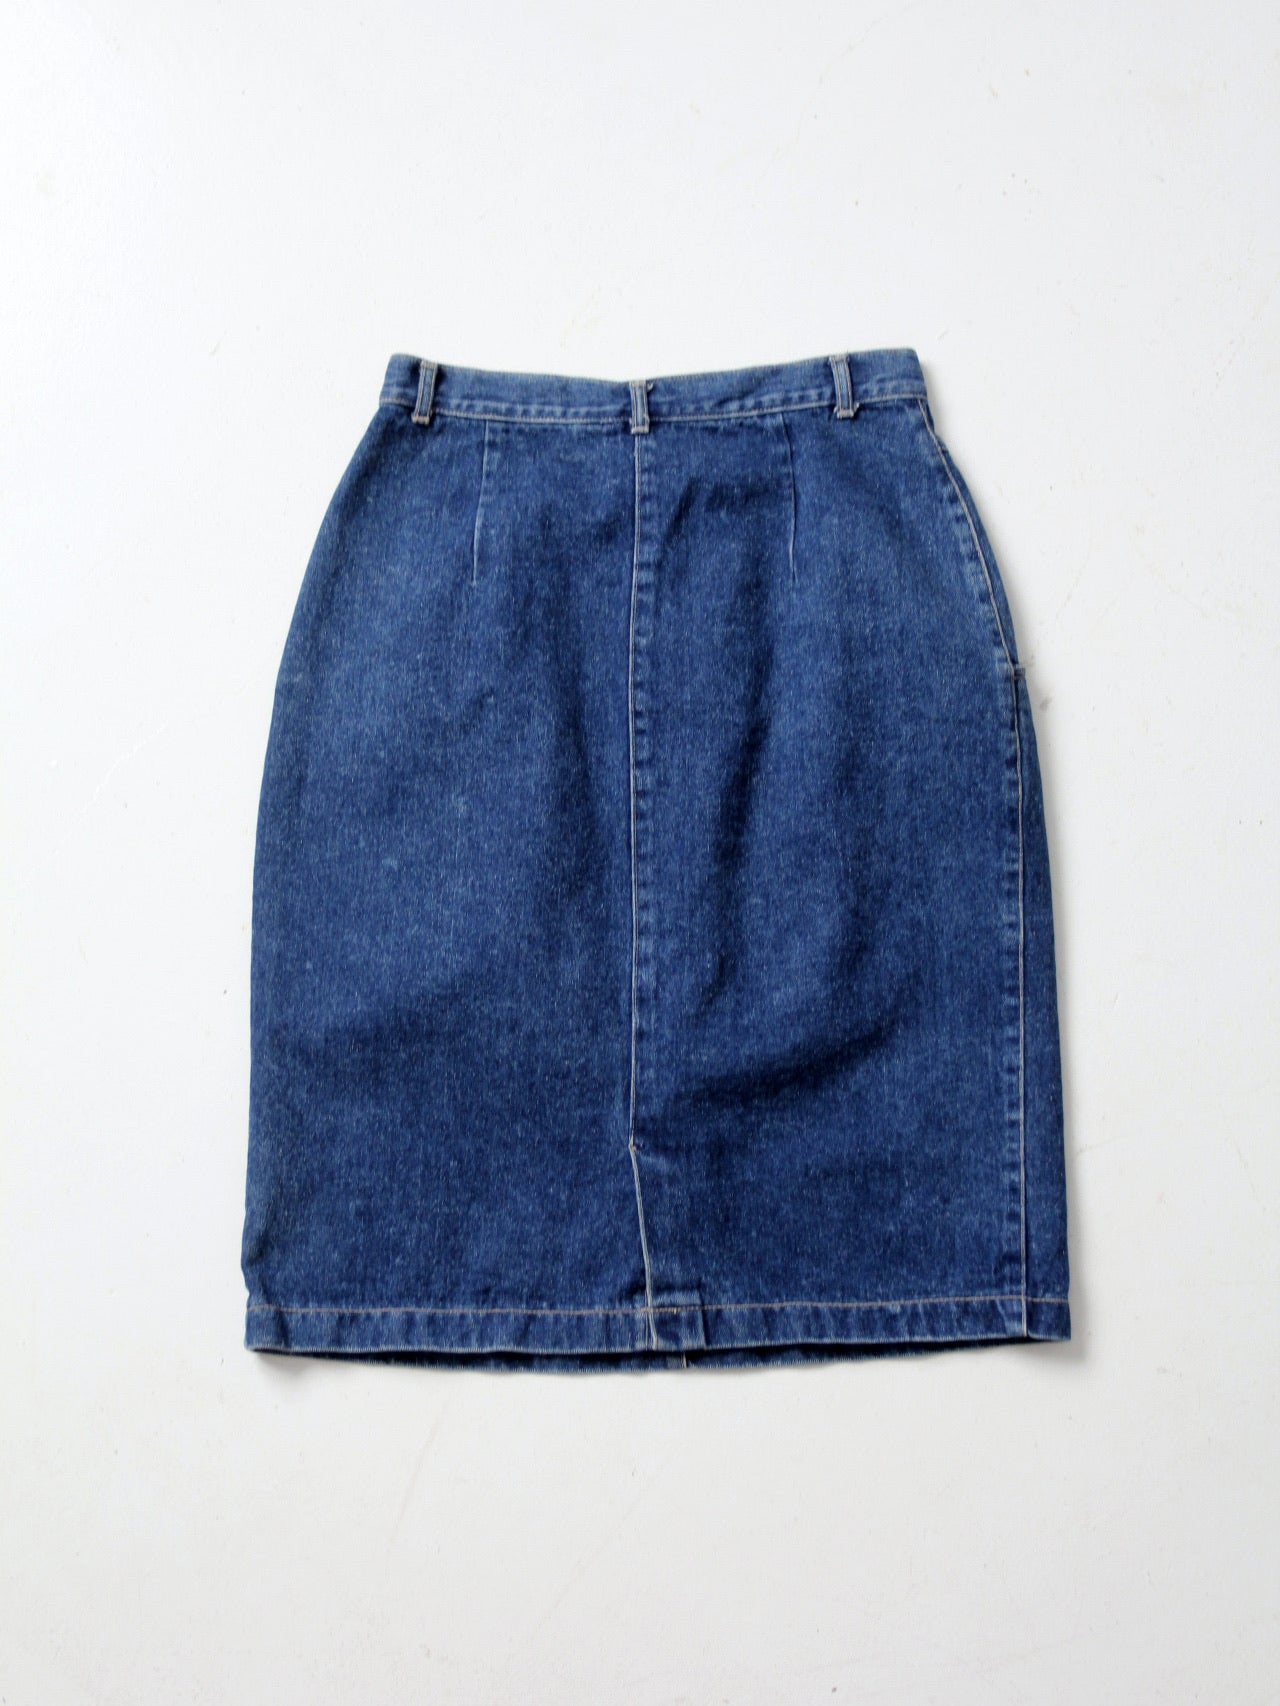 Buy 80s Denim Mini Skirt / Tie Dye Pink and Blue Denim Skirt / High Waisted  Form Fitting Jean Skirt / Summertime Skirt Online in India - Etsy